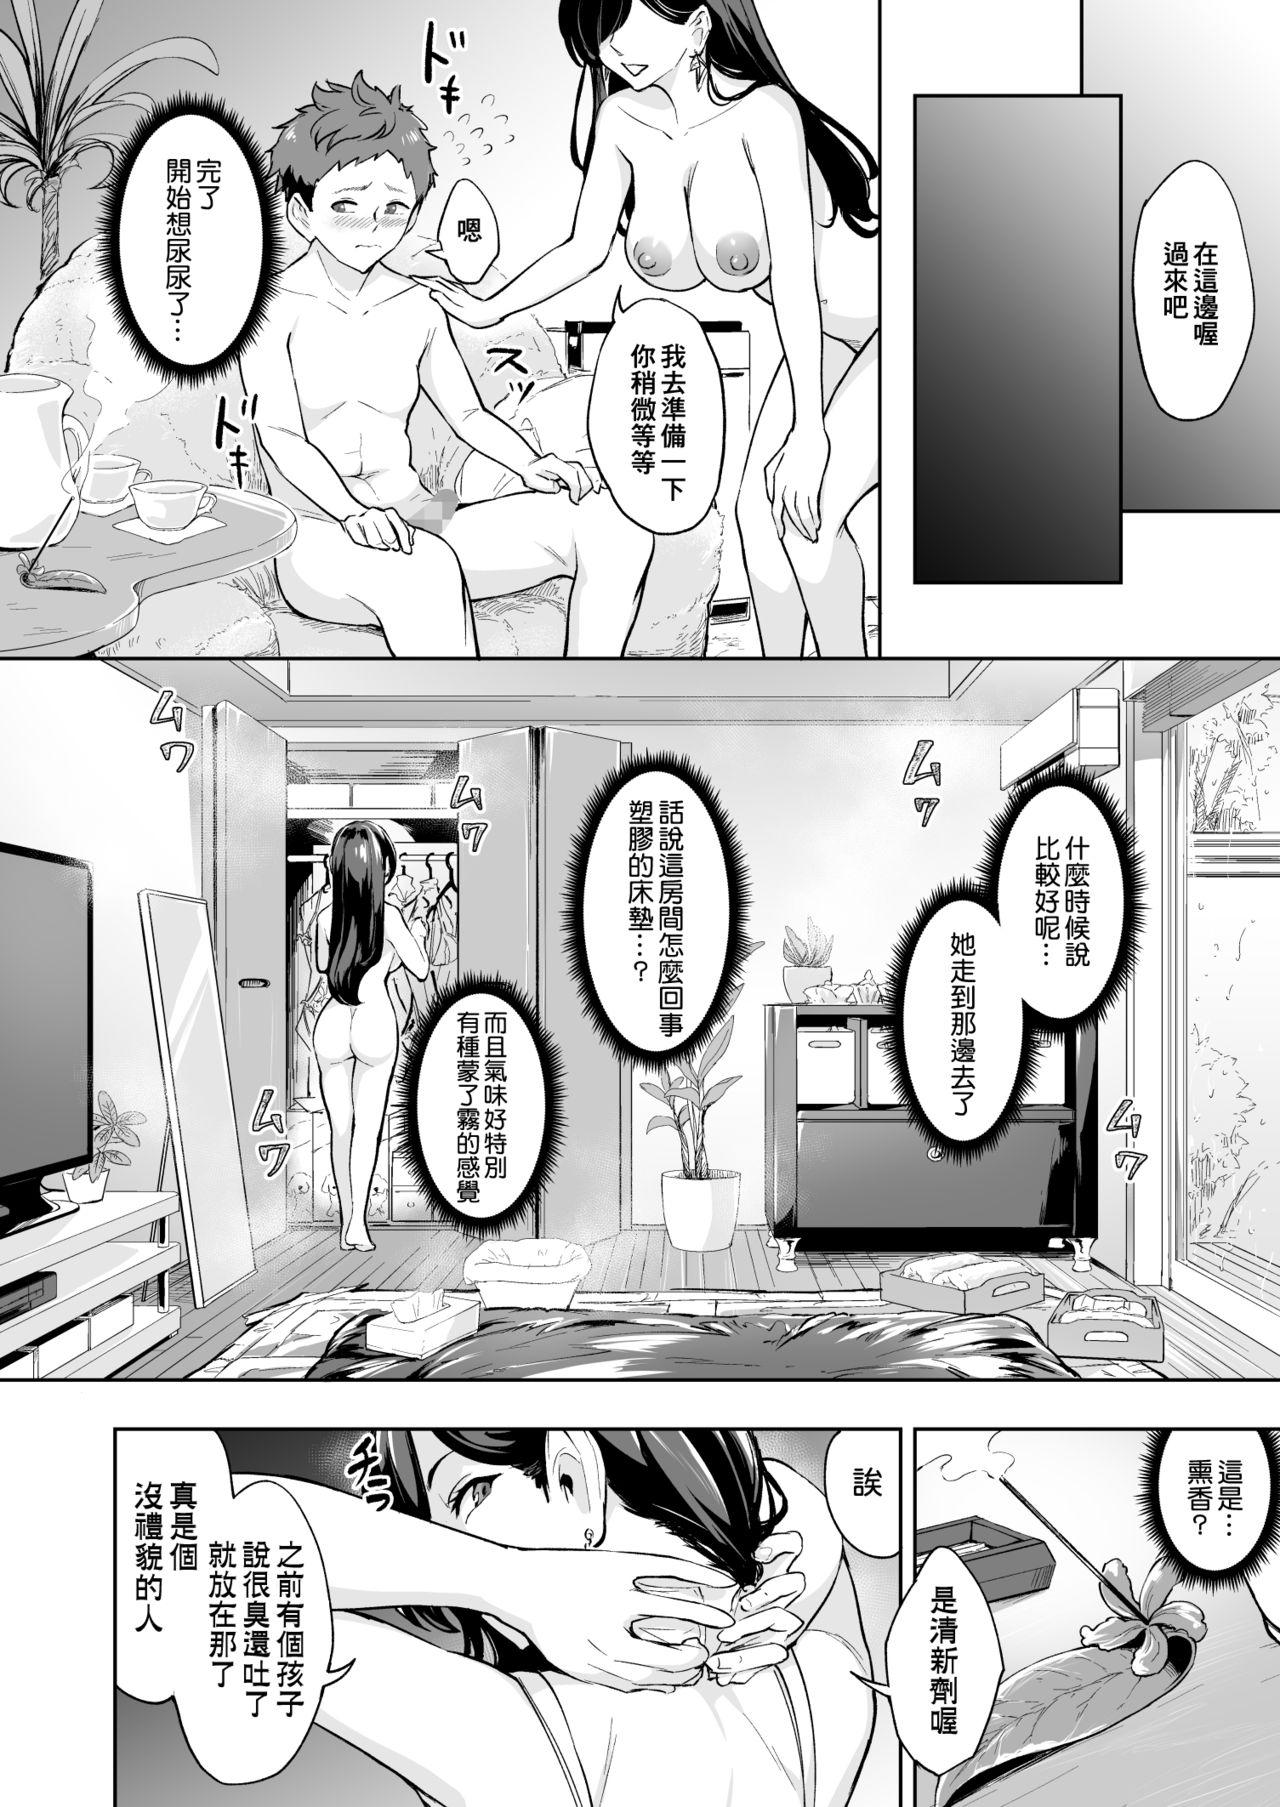 Nasty Porn Arawareta Chijo wa Toshishita Gui no Scatolo Hentai deshita 3 - Original Spy - Page 8